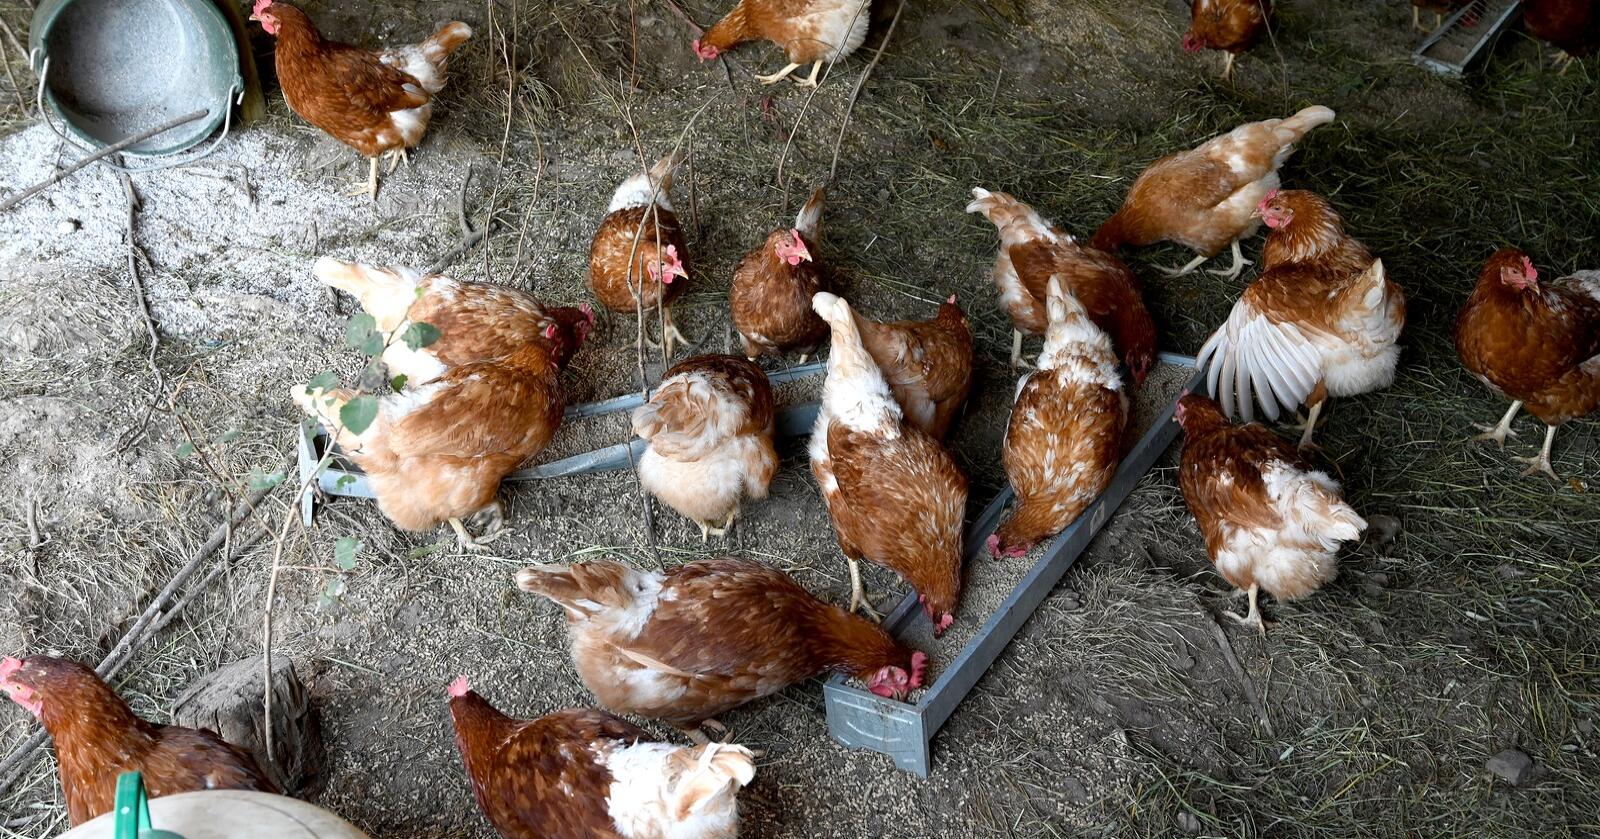 Om lag 7000 høns ble i forrige uke avlivet etter at høypatogen fugleinfluensa ble påvist i besetninga. Foto: Mariann Tvete